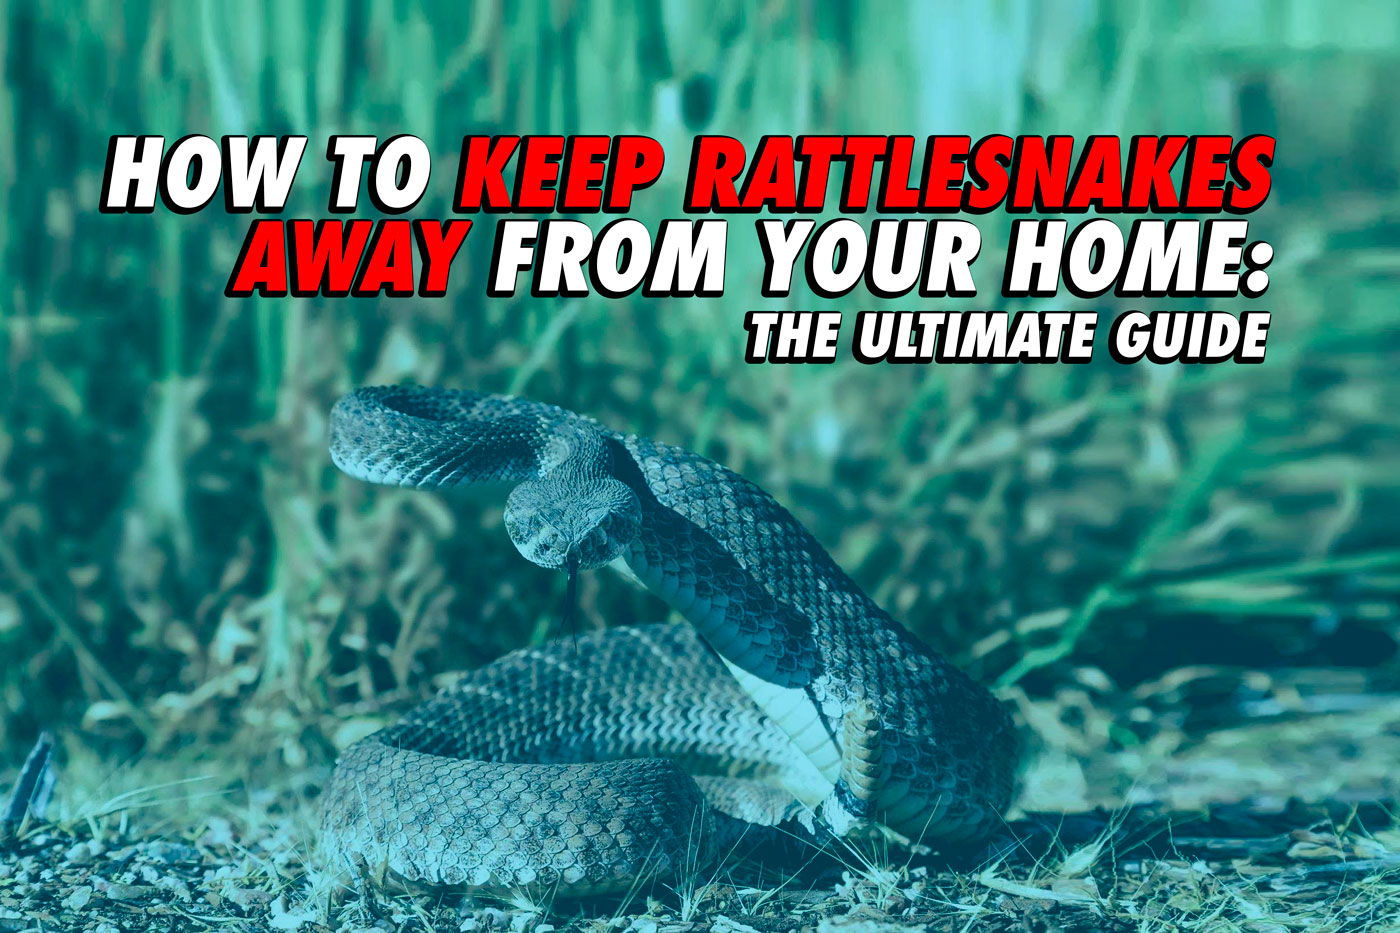 https://rattlesnakesolutions.com/snakeblog/wp-content/uploads/2019/10/blog-header.jpg